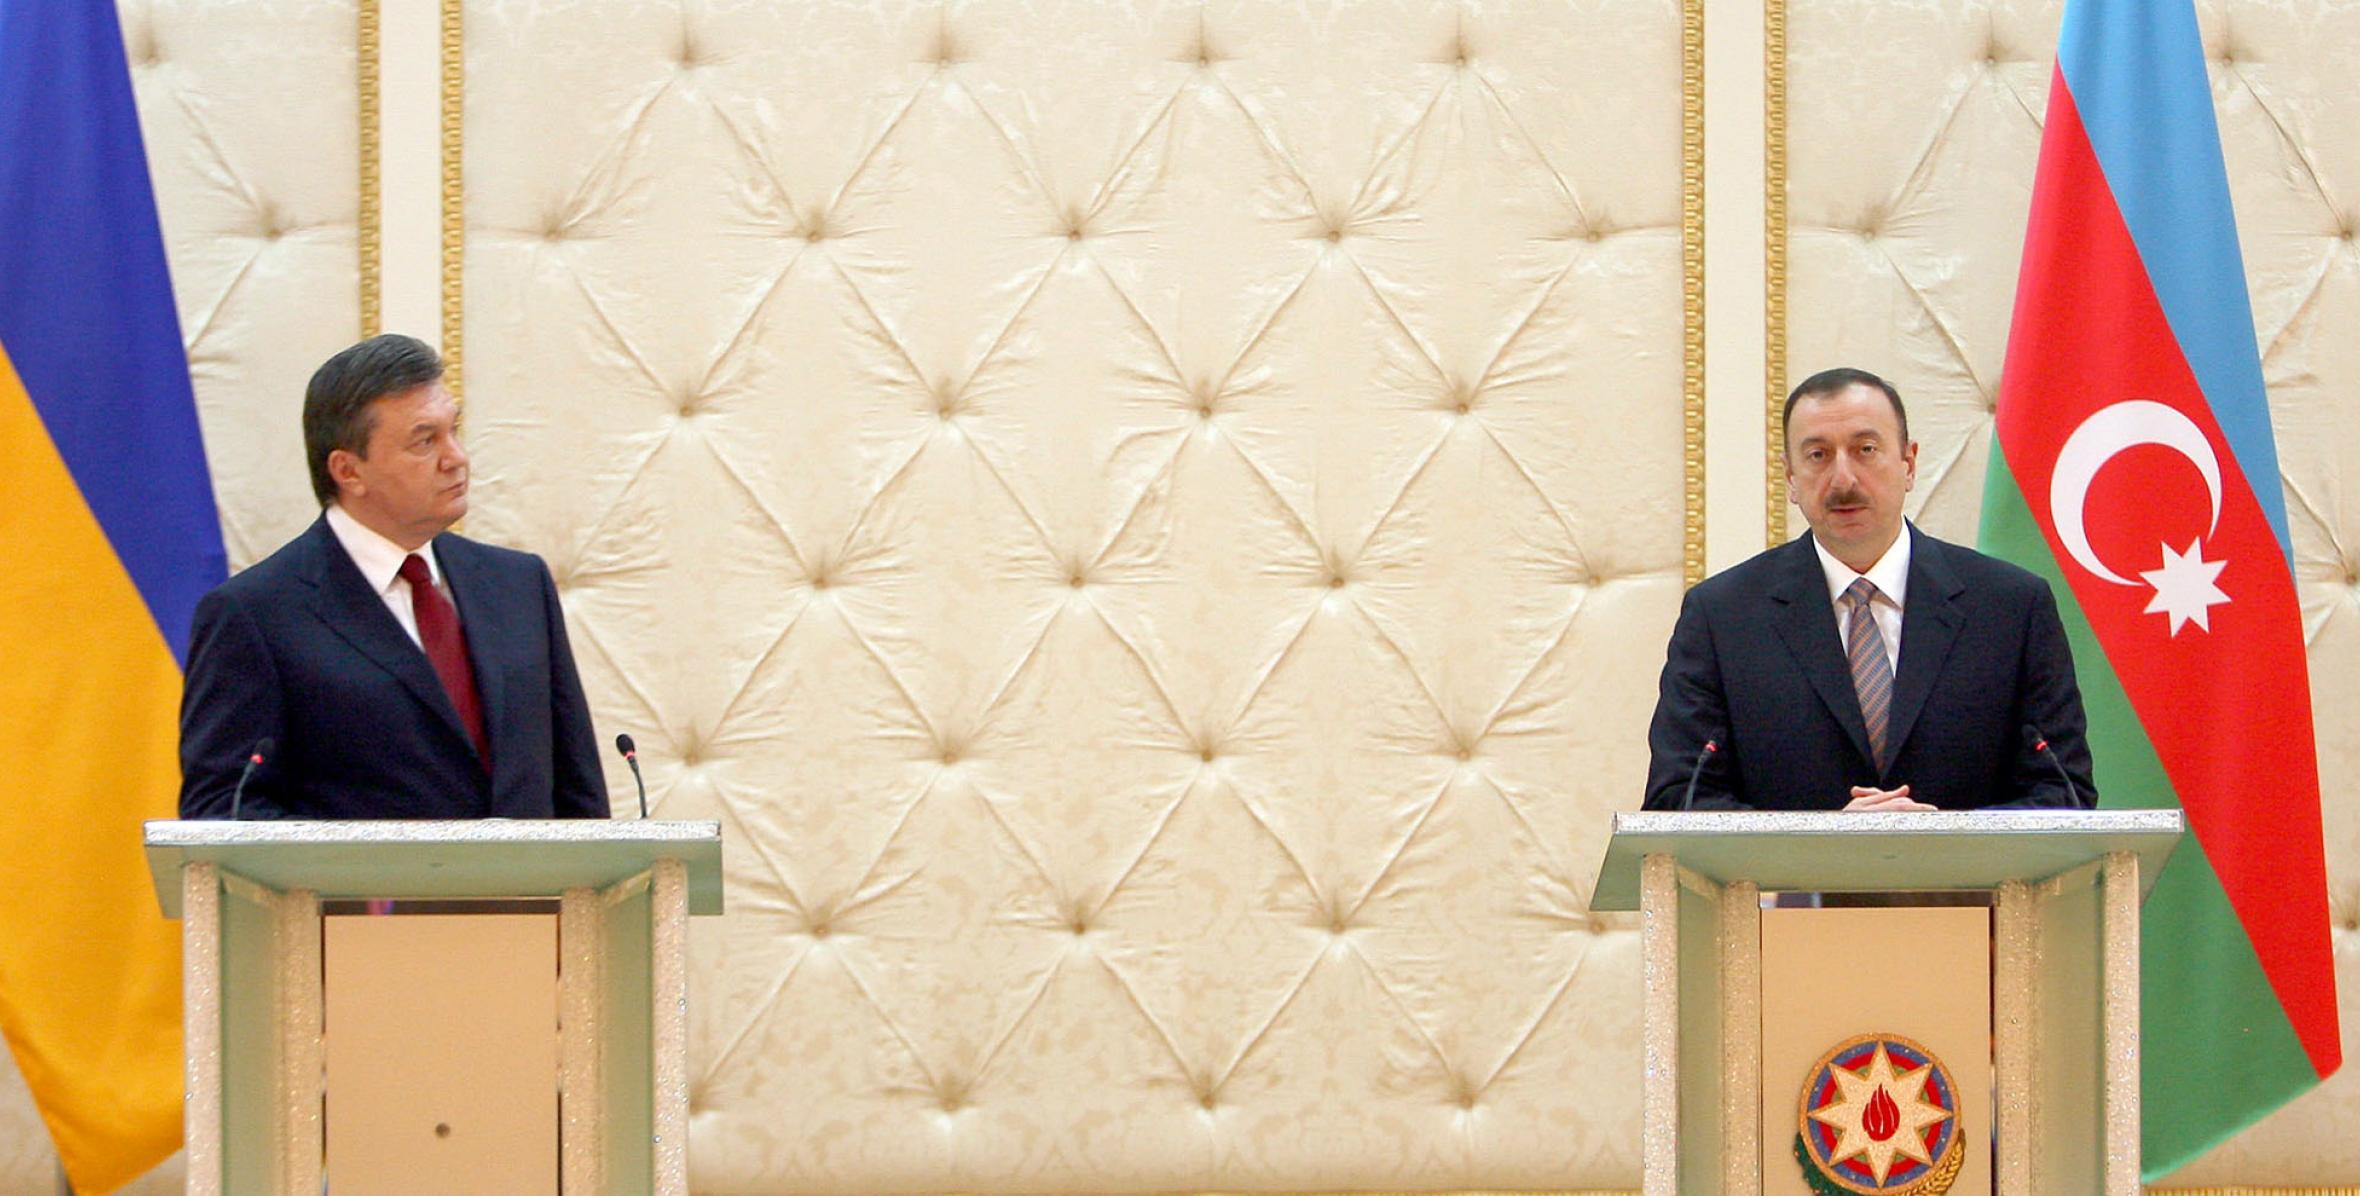 Состоялась совместная пресс-конференция президентов Азербайджана и Украины